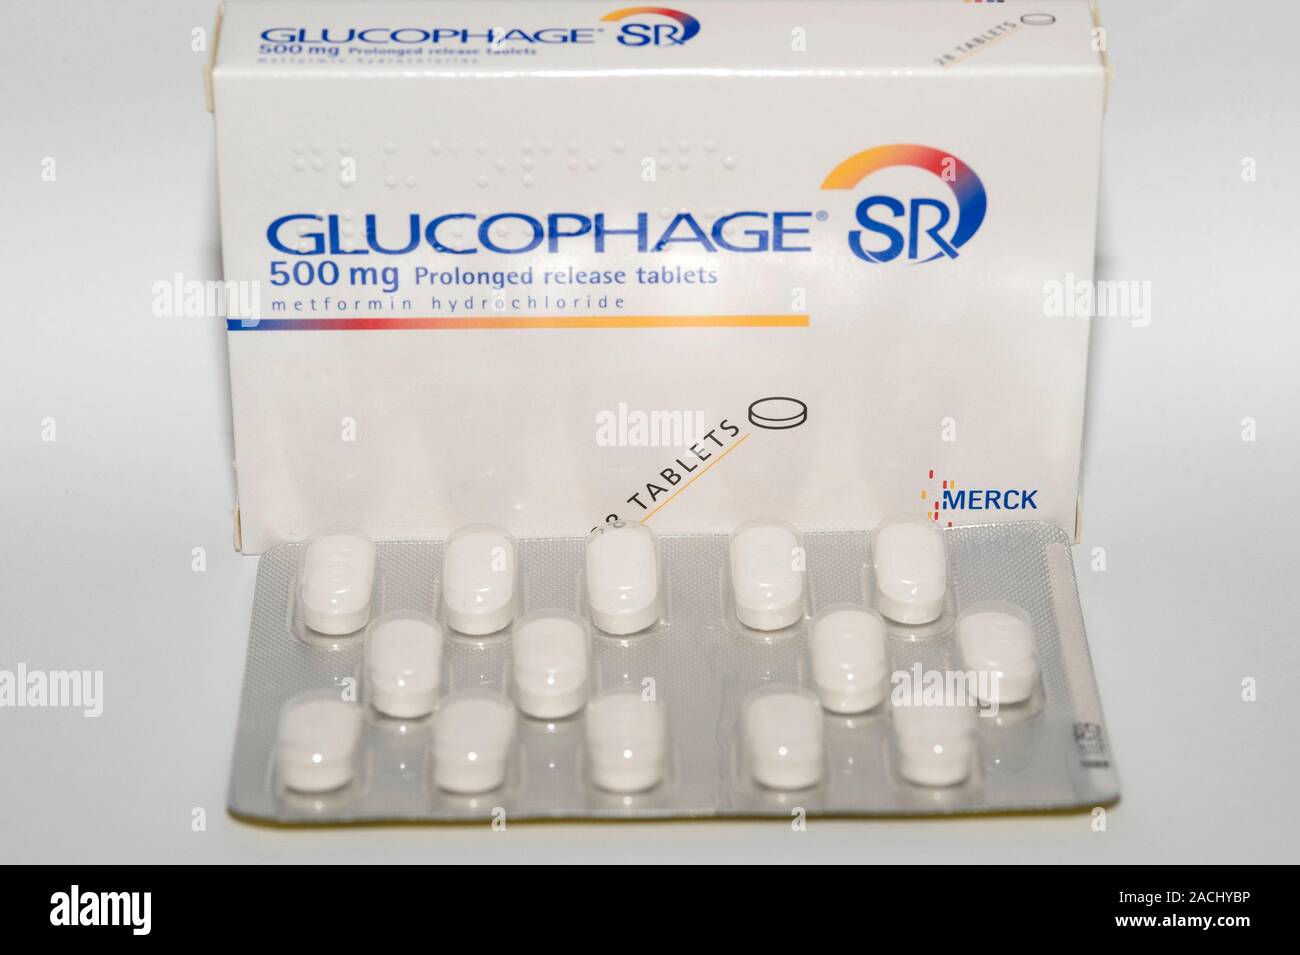 Tabletten von Glucophage (Metformin) SR 500 g slow release Diabetes  Medikament in einer Blase. Metformin Hydrochlorid ist ein orales Medikament  zur Steuerung bl Stockfotografie - Alamy